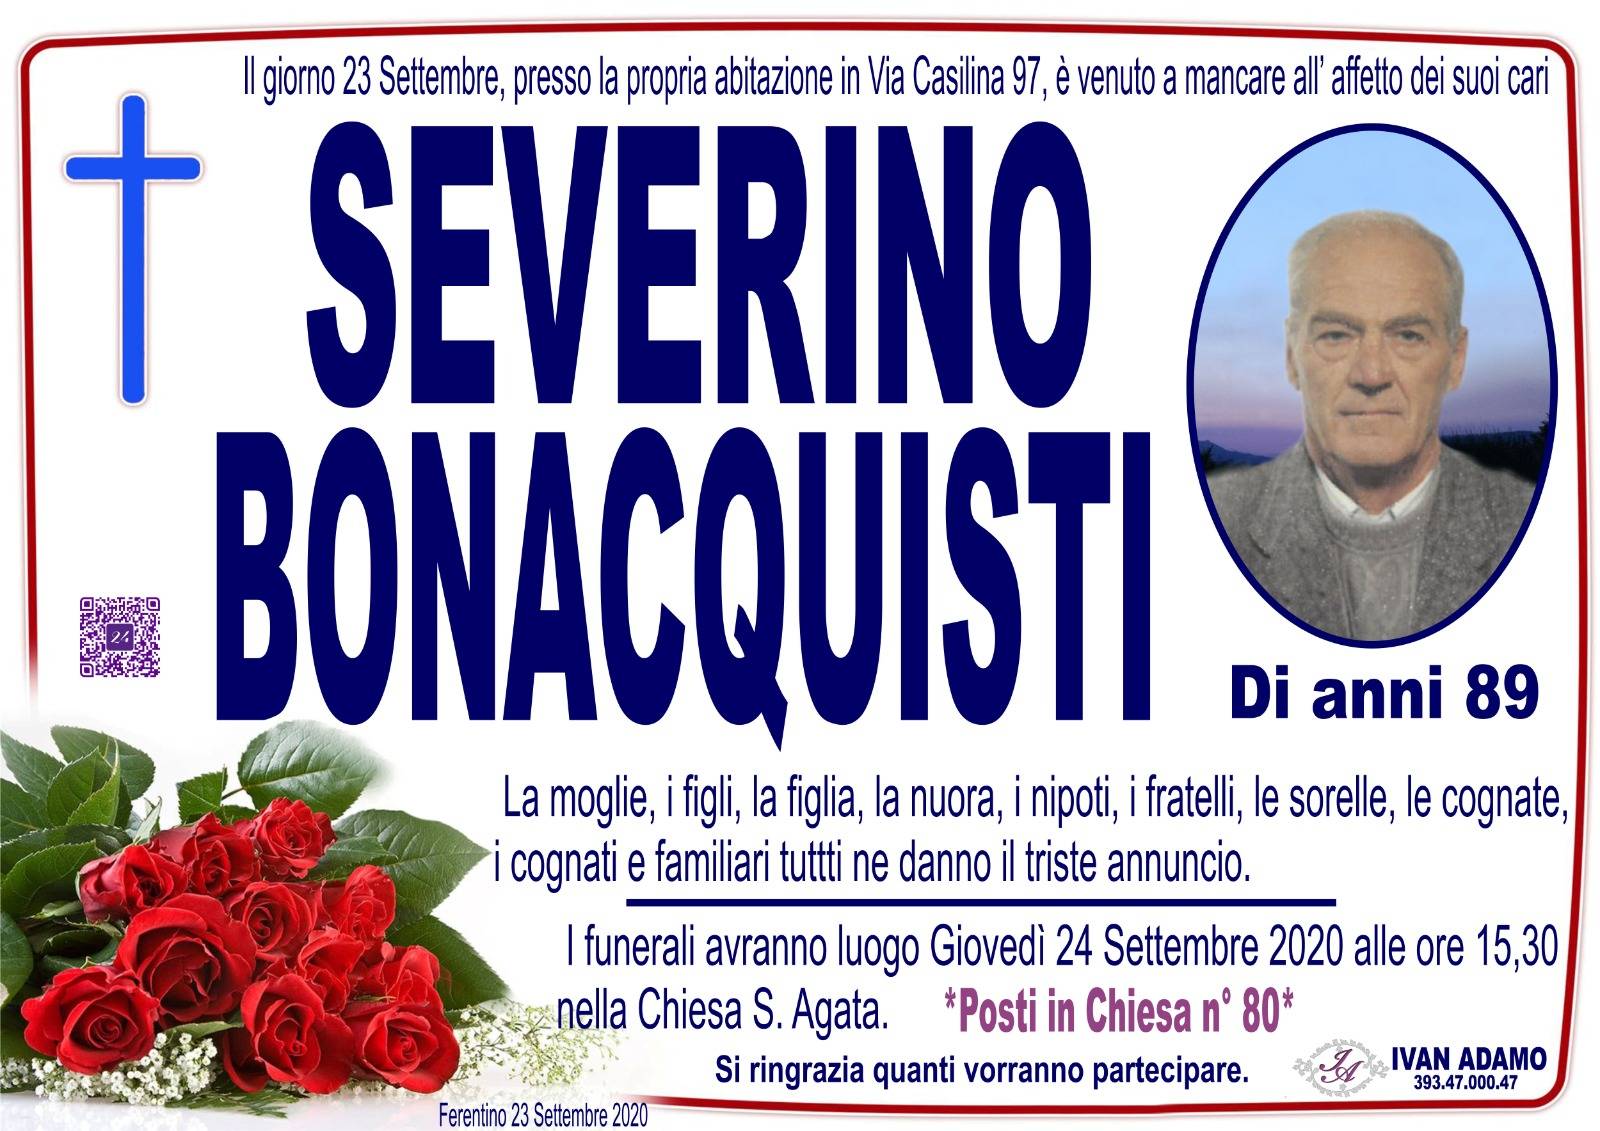 Severino Bonacquisti